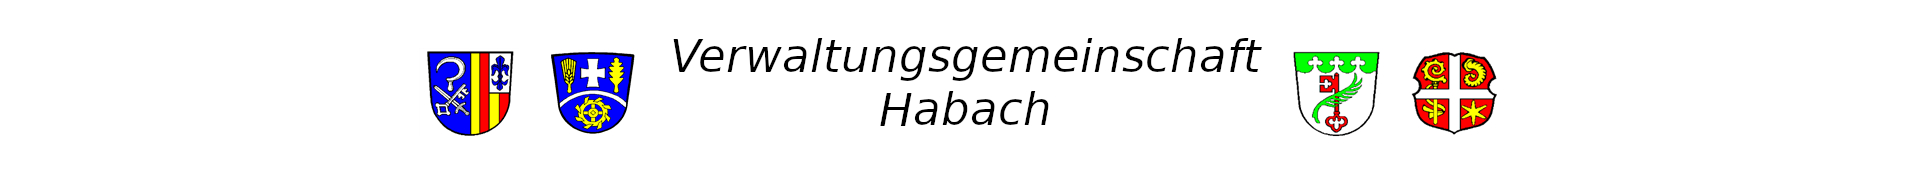 Verwaltungsgemeinschaft Habach